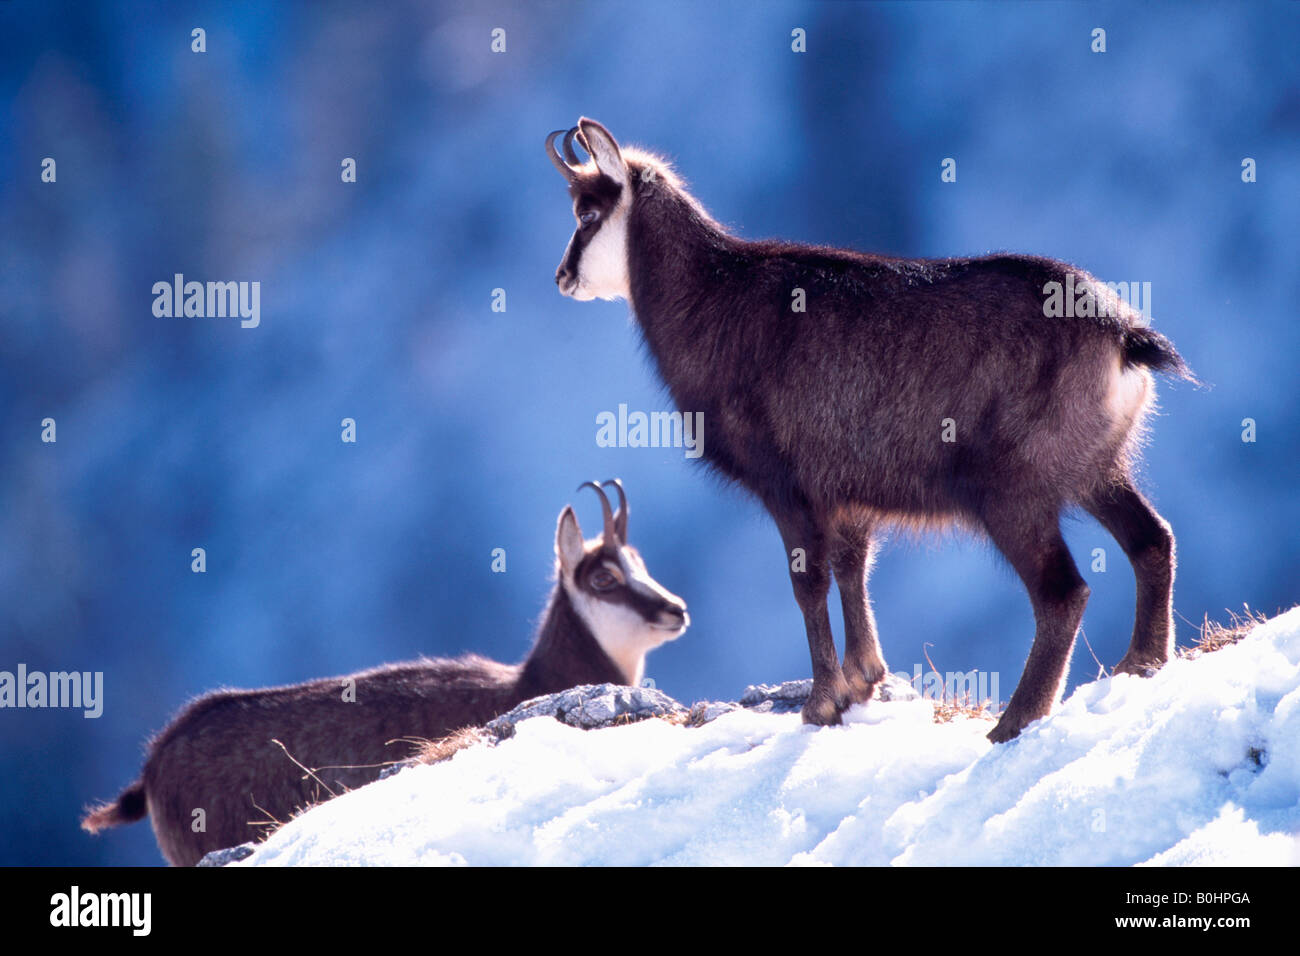 Gämse (Rupicapra Rupicapra) in den Schnee, Schleimssattel, Karwendel-Palette, Österreich, Europa Stockfoto